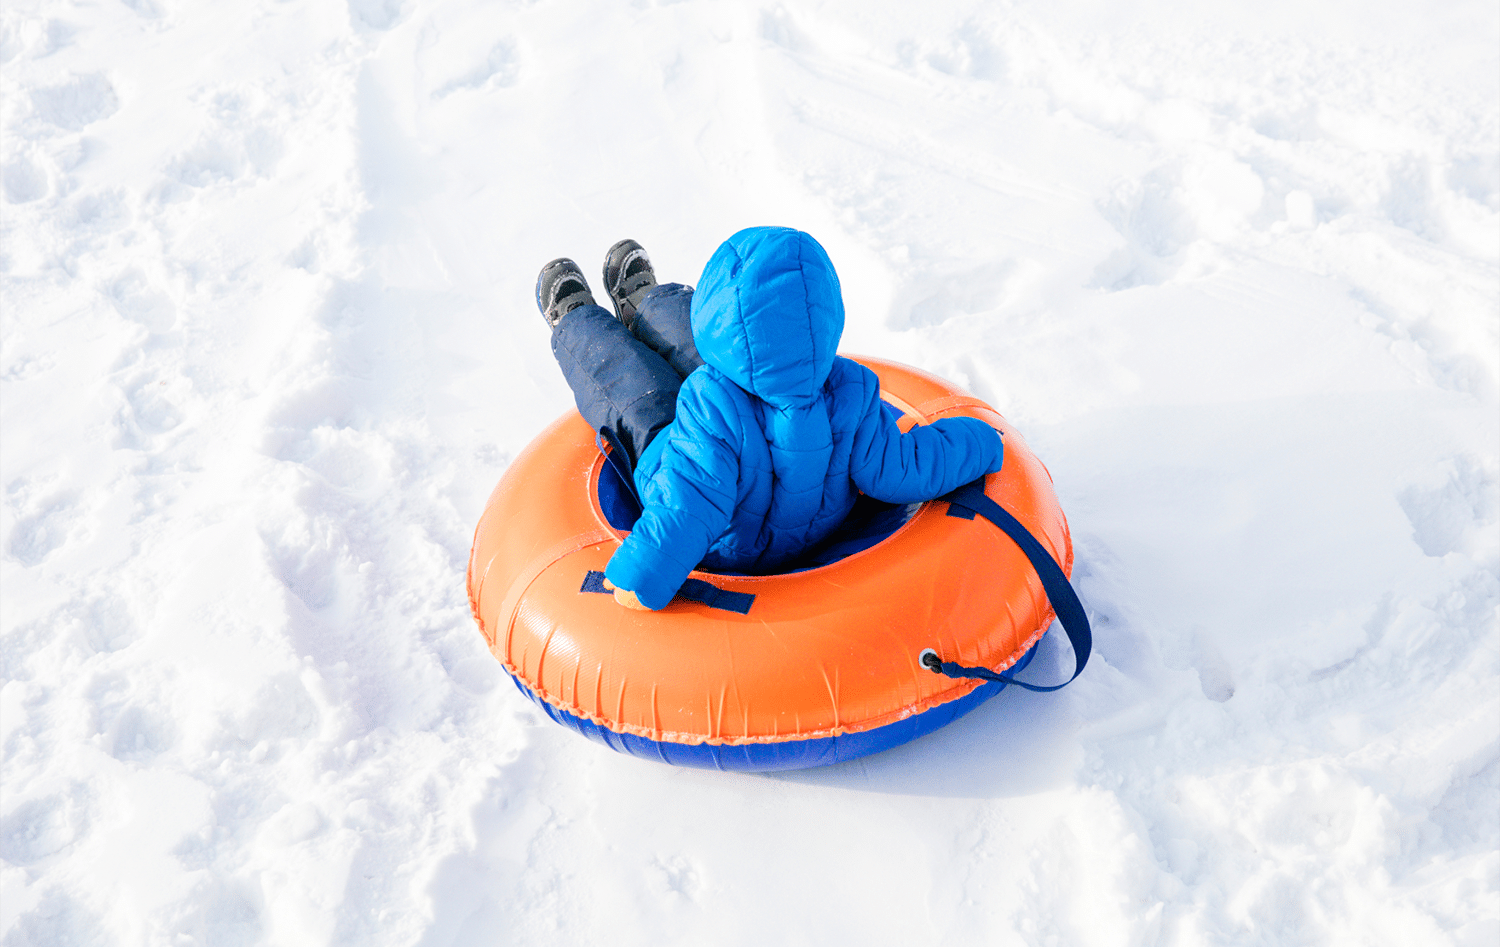 horizontal photo of a small child snow tubing on an orange tube